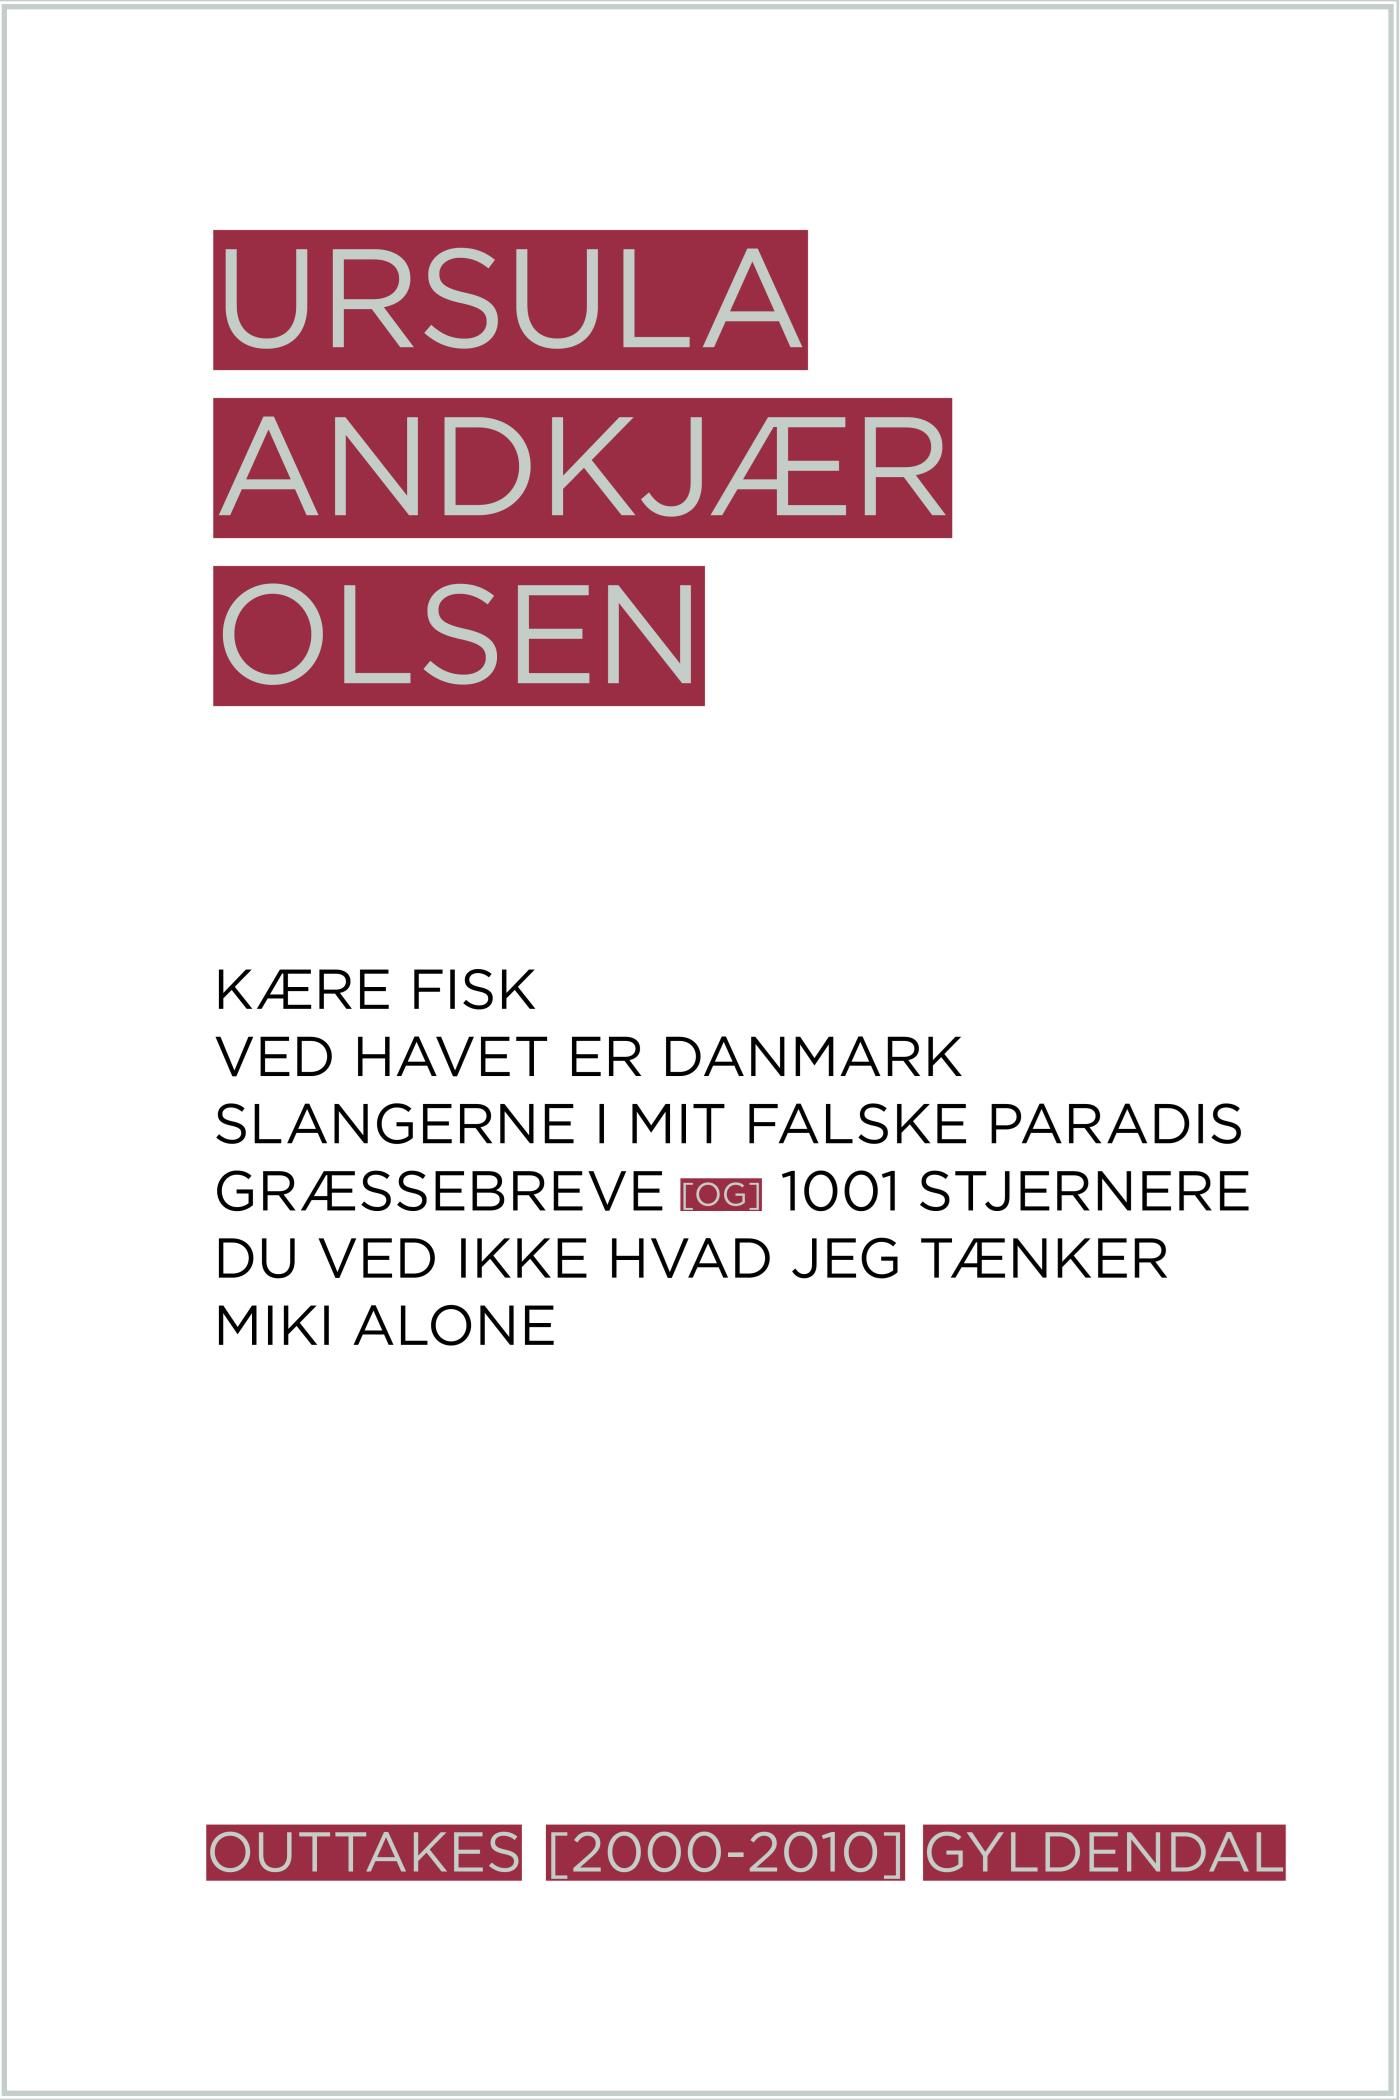 Outtakes, e-bok av Ursula Andkjær Olsen